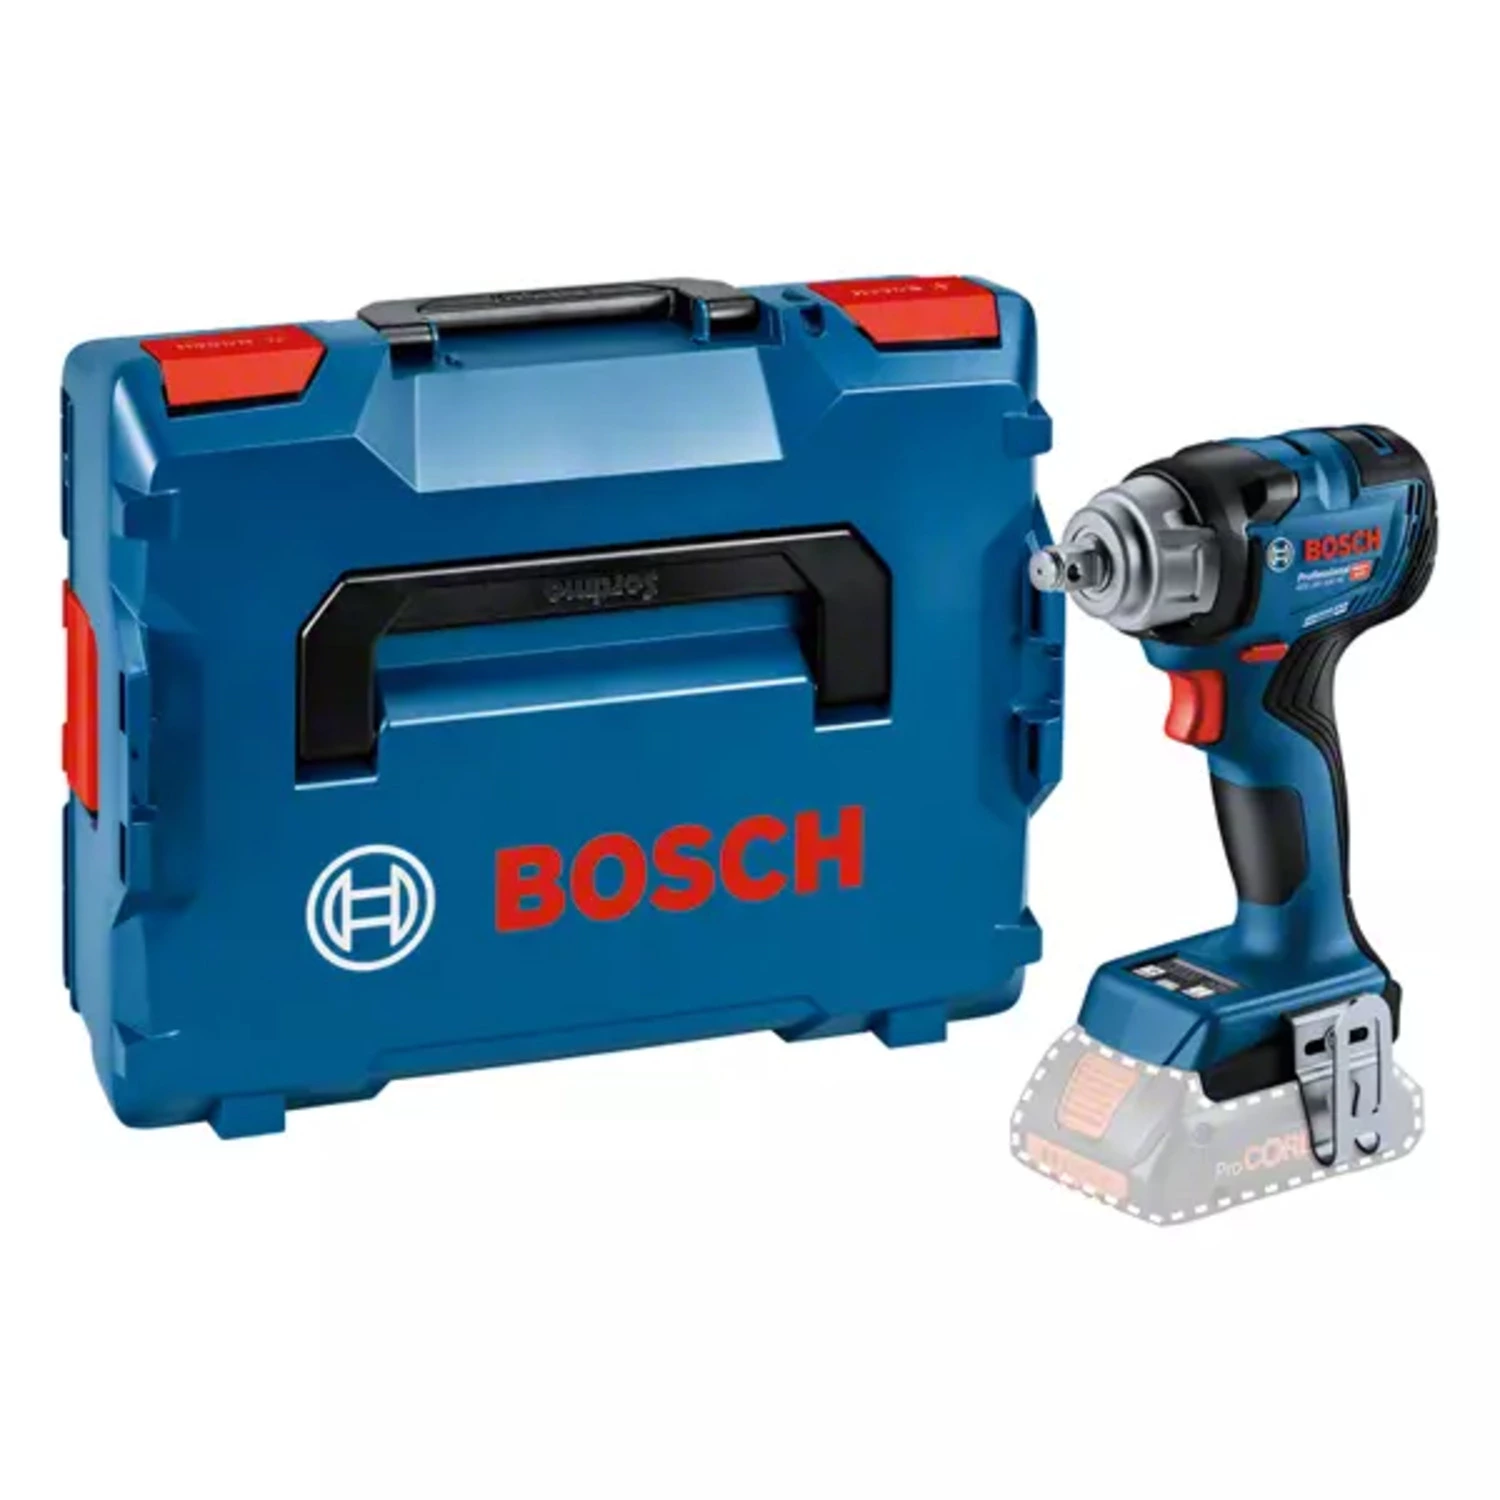 Bosch GDS 18V-330 HC 18V accu slagmoersleutel body in L-boxx - 1/2 - 560 Nm